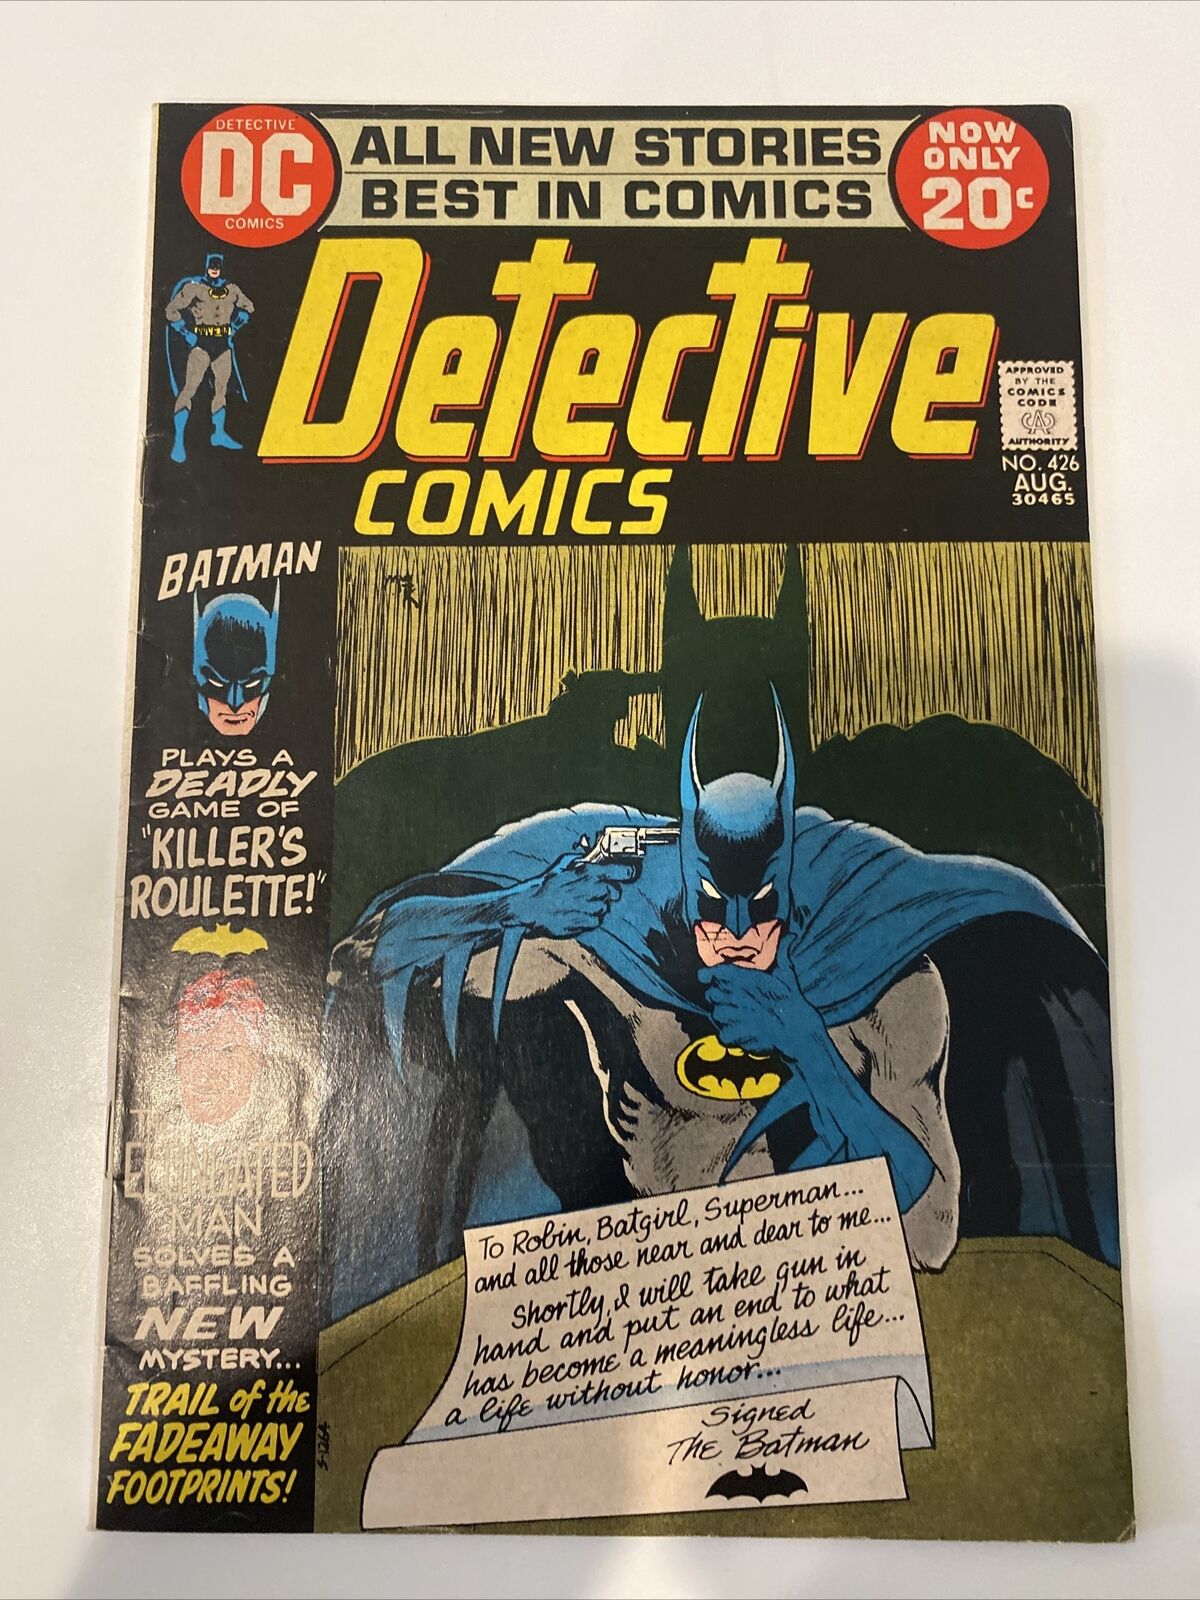 Detective Comics #426 (DC Comics 1972) Batman